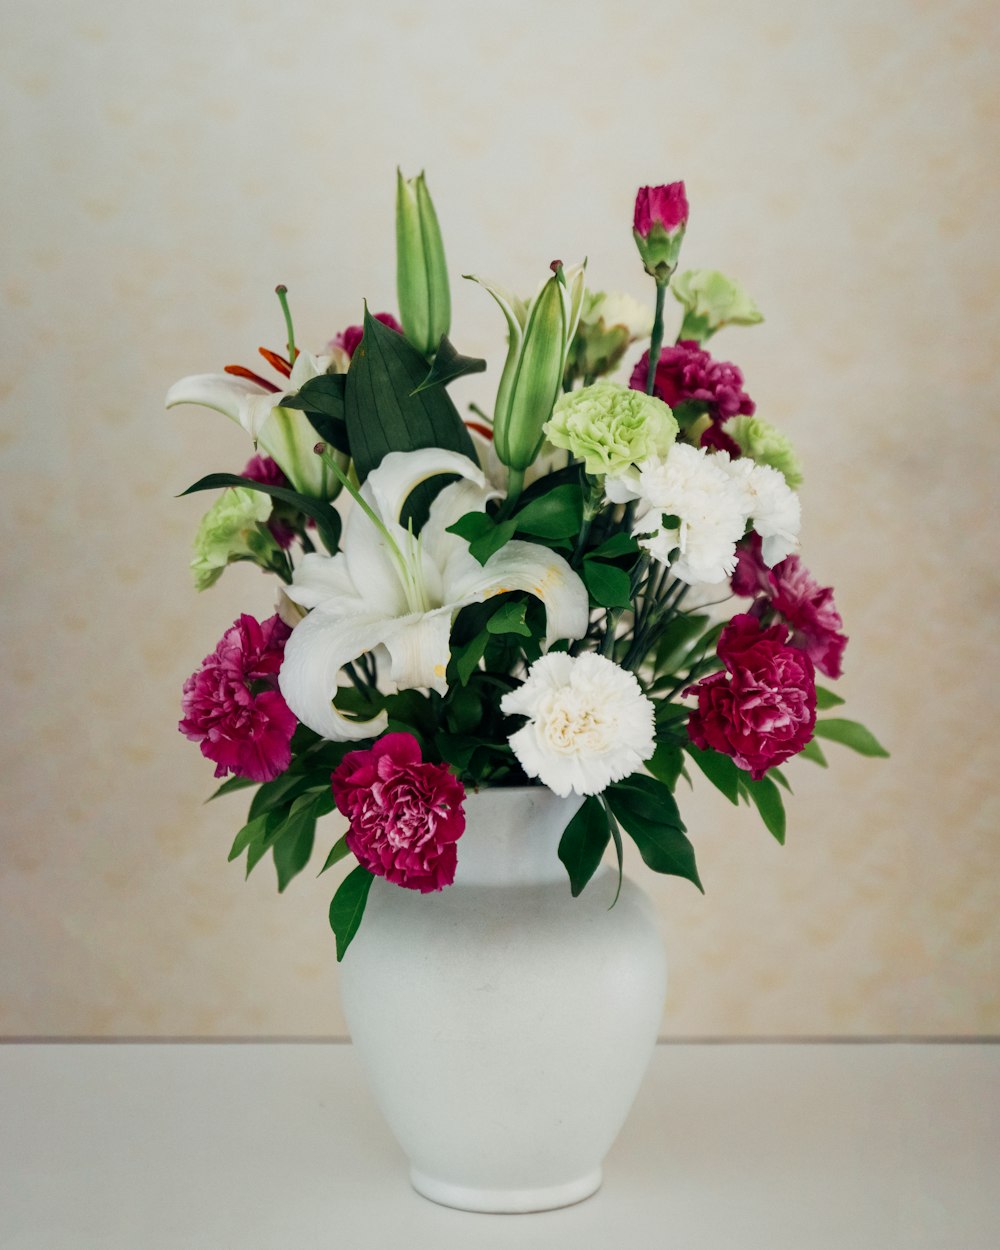 Composizione floreale a petali bianchi e viola su vaso bianco